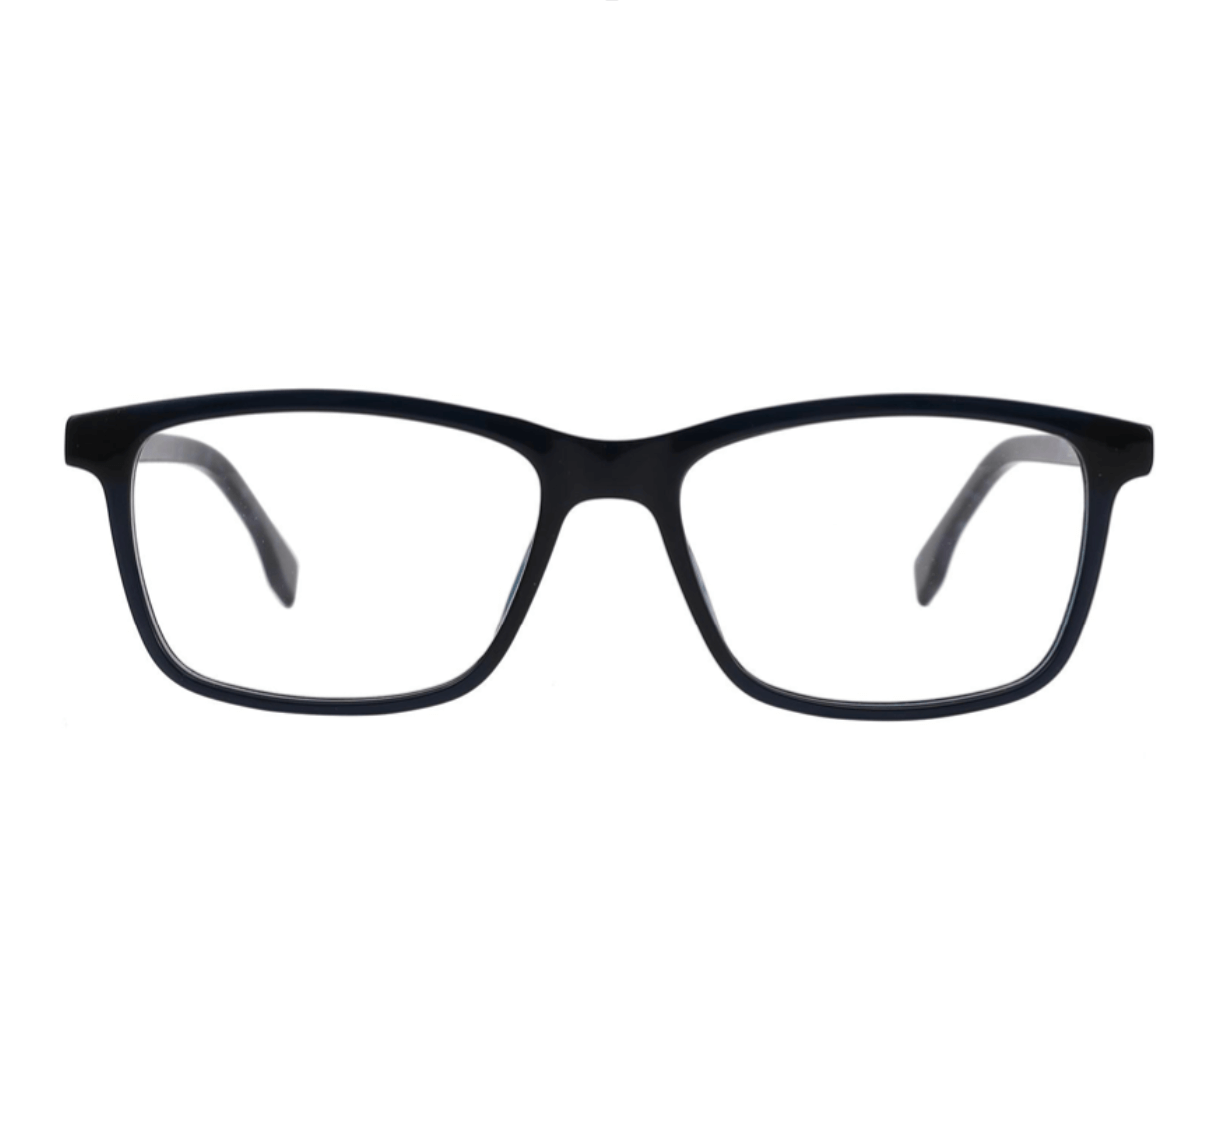 acetate glasses, acetate eyewear manufacturers, eyewear companies, eyewear factory